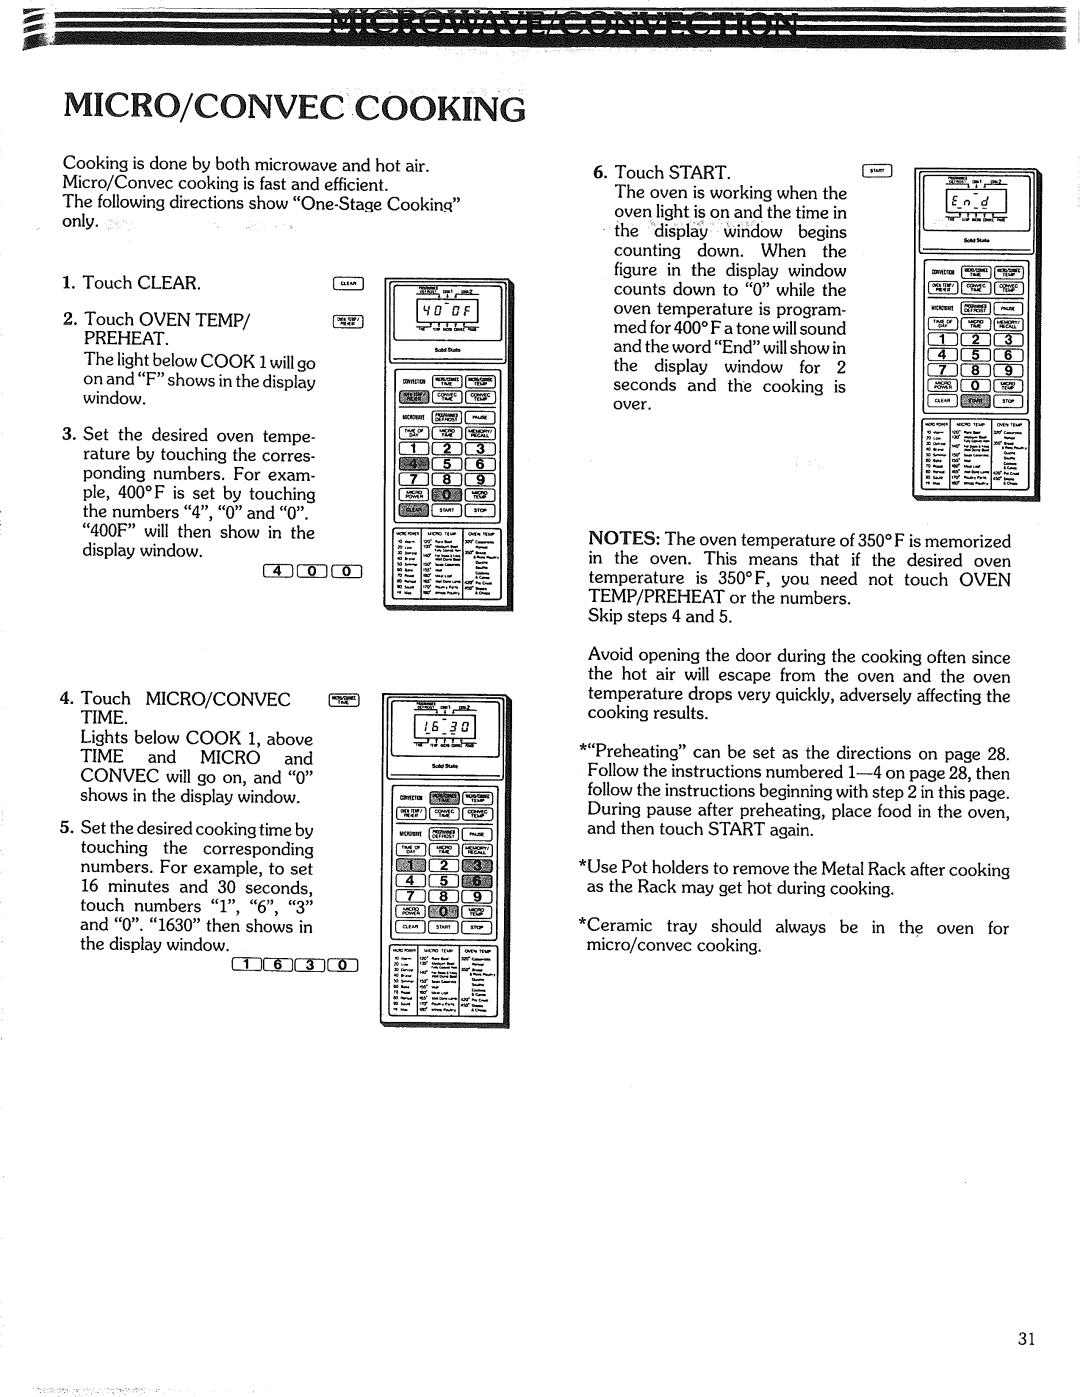 Kenmore 87561 manual Micro/Conveccooking 